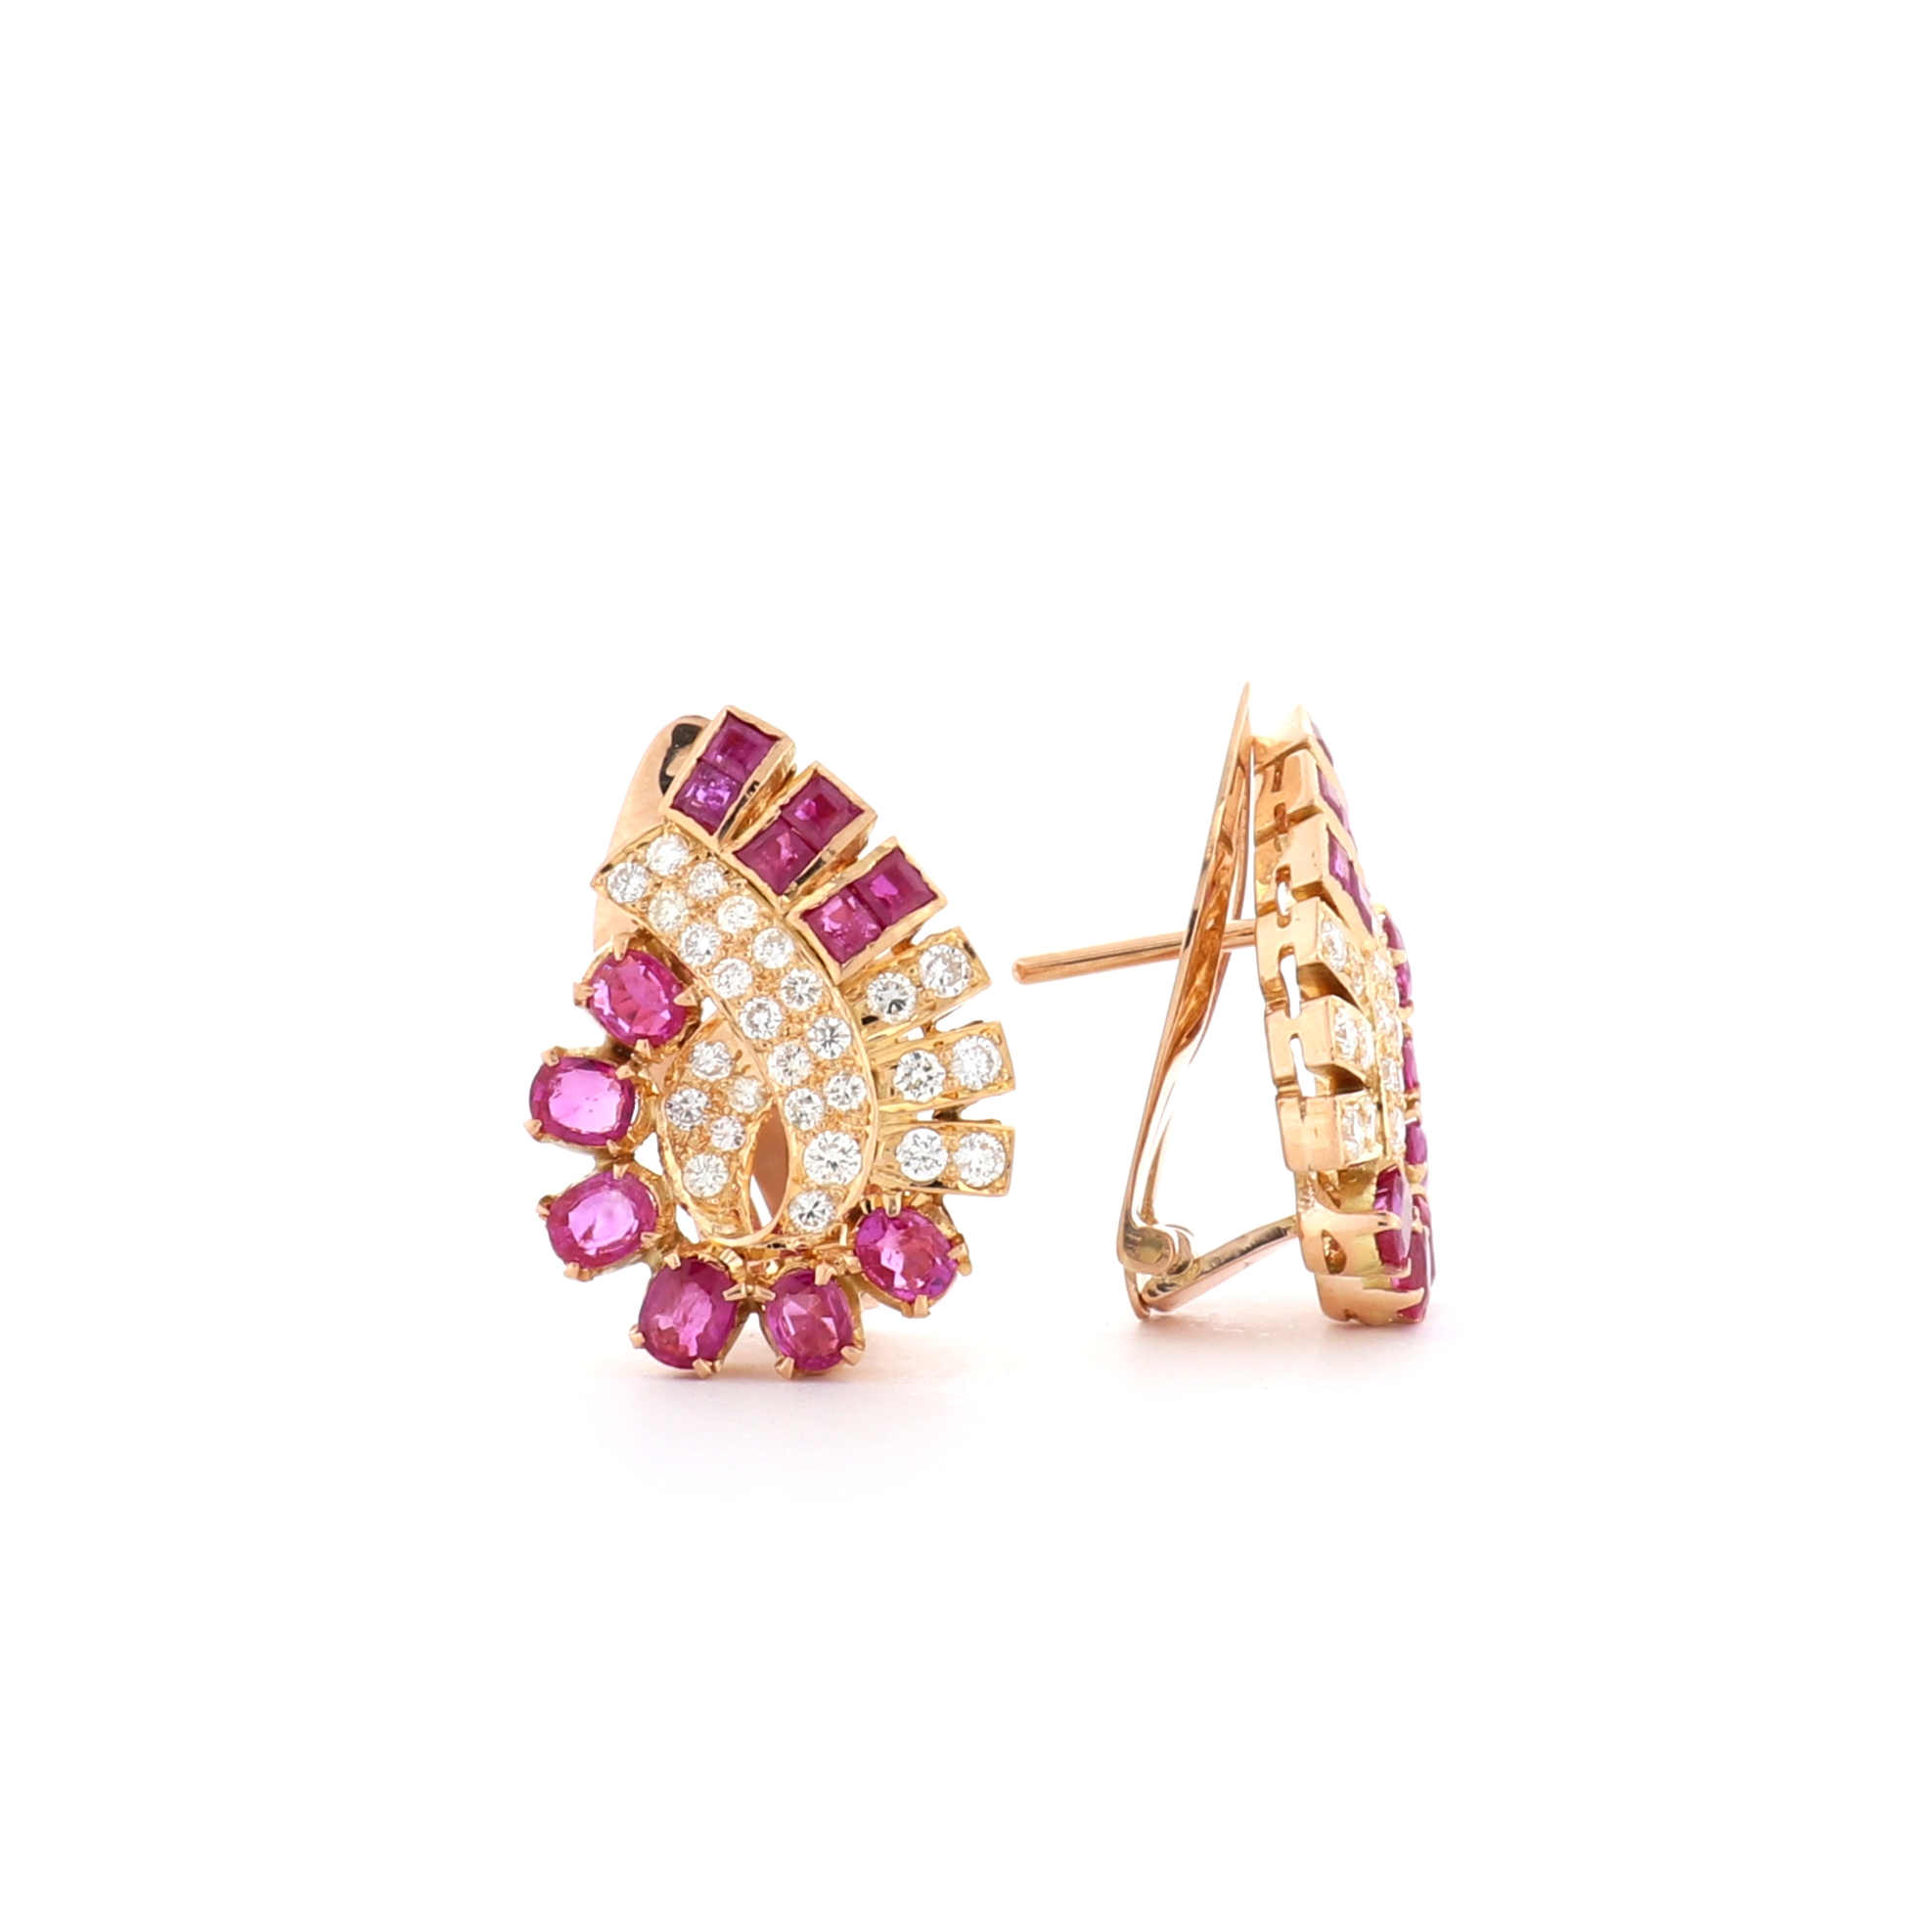 Buy wholesale Crystal Vintage ruby rhodium and zirconia earrings